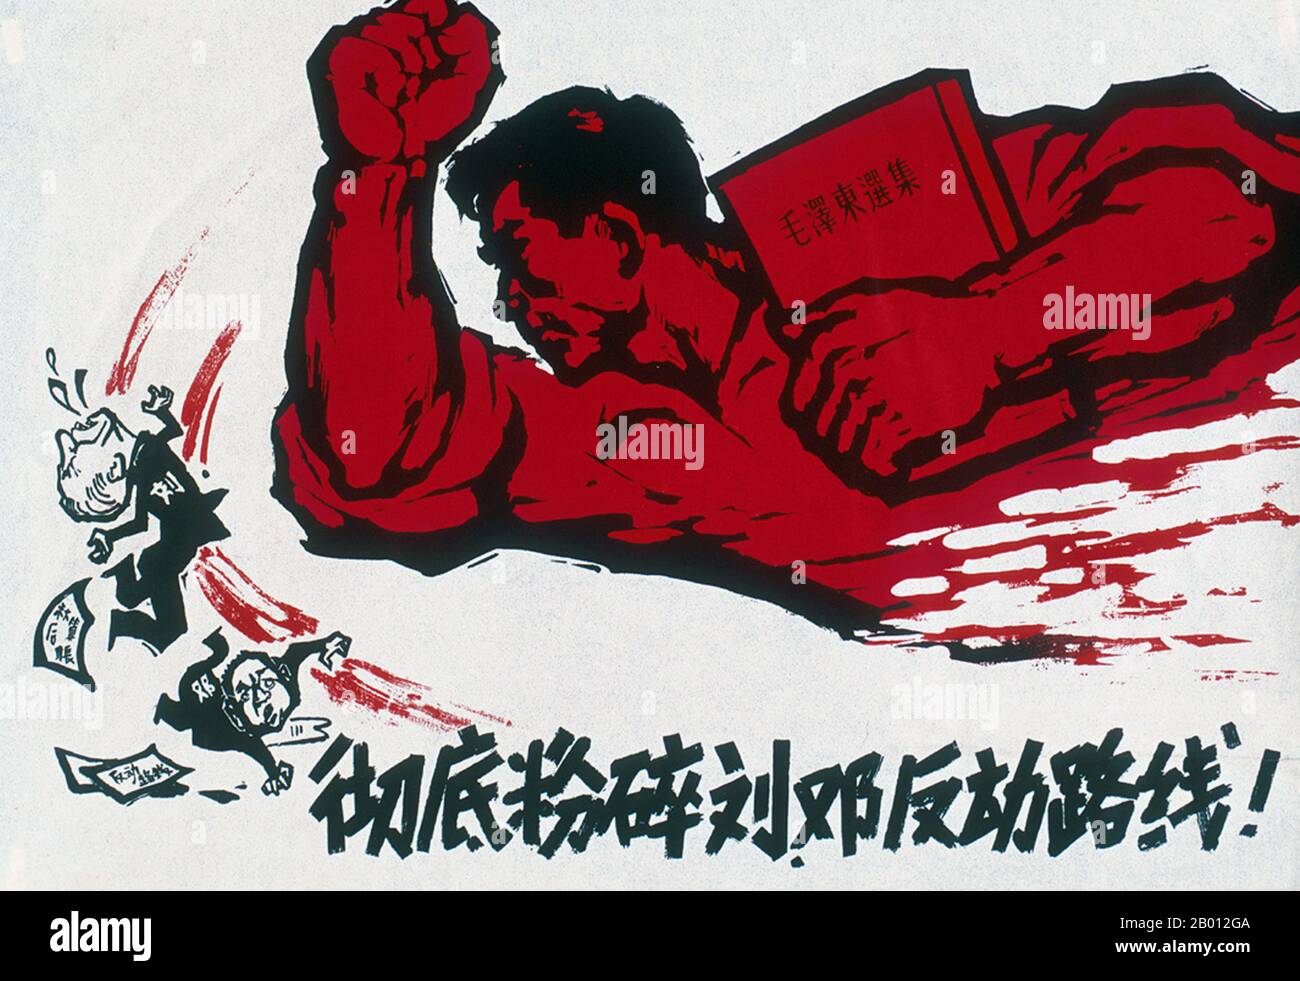 Cina: 'Completamente Smash la linea contro-rivoluzionaria Liu-Deng'. Rivoluzione culturale poster arte, 1967. Liu Shaoqi (Liu Shao-ch'i, 24 novembre 1898 – 12 novembre 1969) è stato un . È stato presidente della Repubblica popolare cinese, capo di Stato cinese, dal 1959 al 1968, durante il quale ha attuato politiche di ricostruzione economica in Cina. Deng Xiaoping (Teng Hsiao-p'ing, 22 agosto 1904 – 19 febbraio 1997) è stato un politico, statista, teorico e diplomatico. In qualità di leader del Partito comunista, Deng era un riformatore che guidava la Cina verso un'economia di mercato. Foto Stock